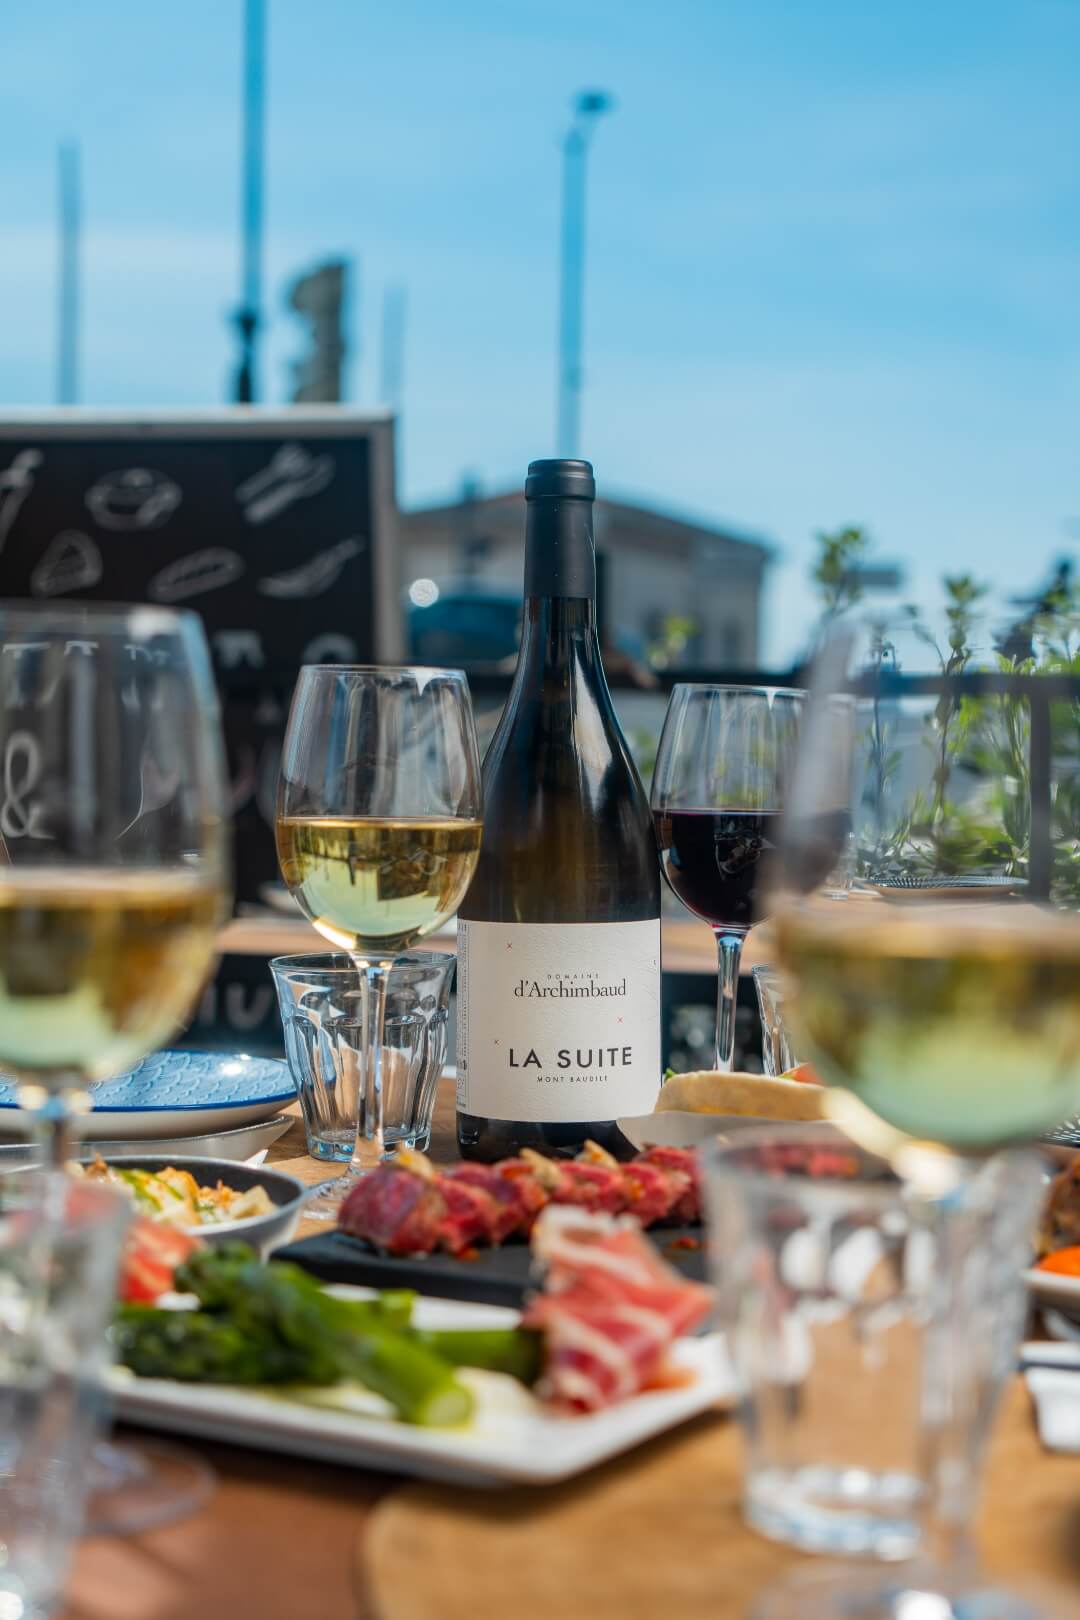 Différents tapas disposés sur une table en terrasse avec une bouteille de vin du domaine archimbaud.